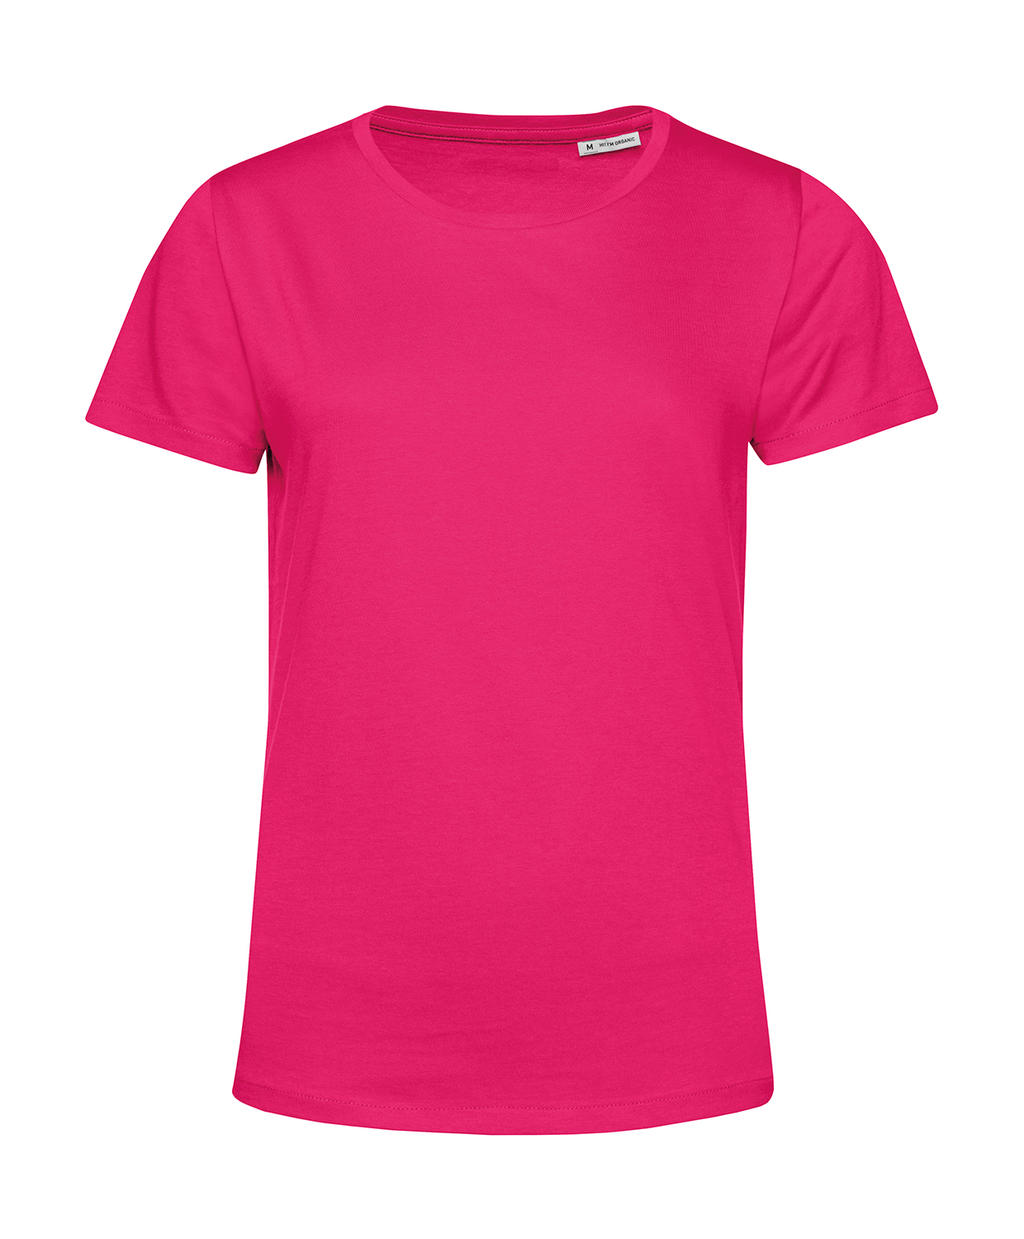 Tričko dámské BC Organic Inspire E150 - tmavě růžové, S